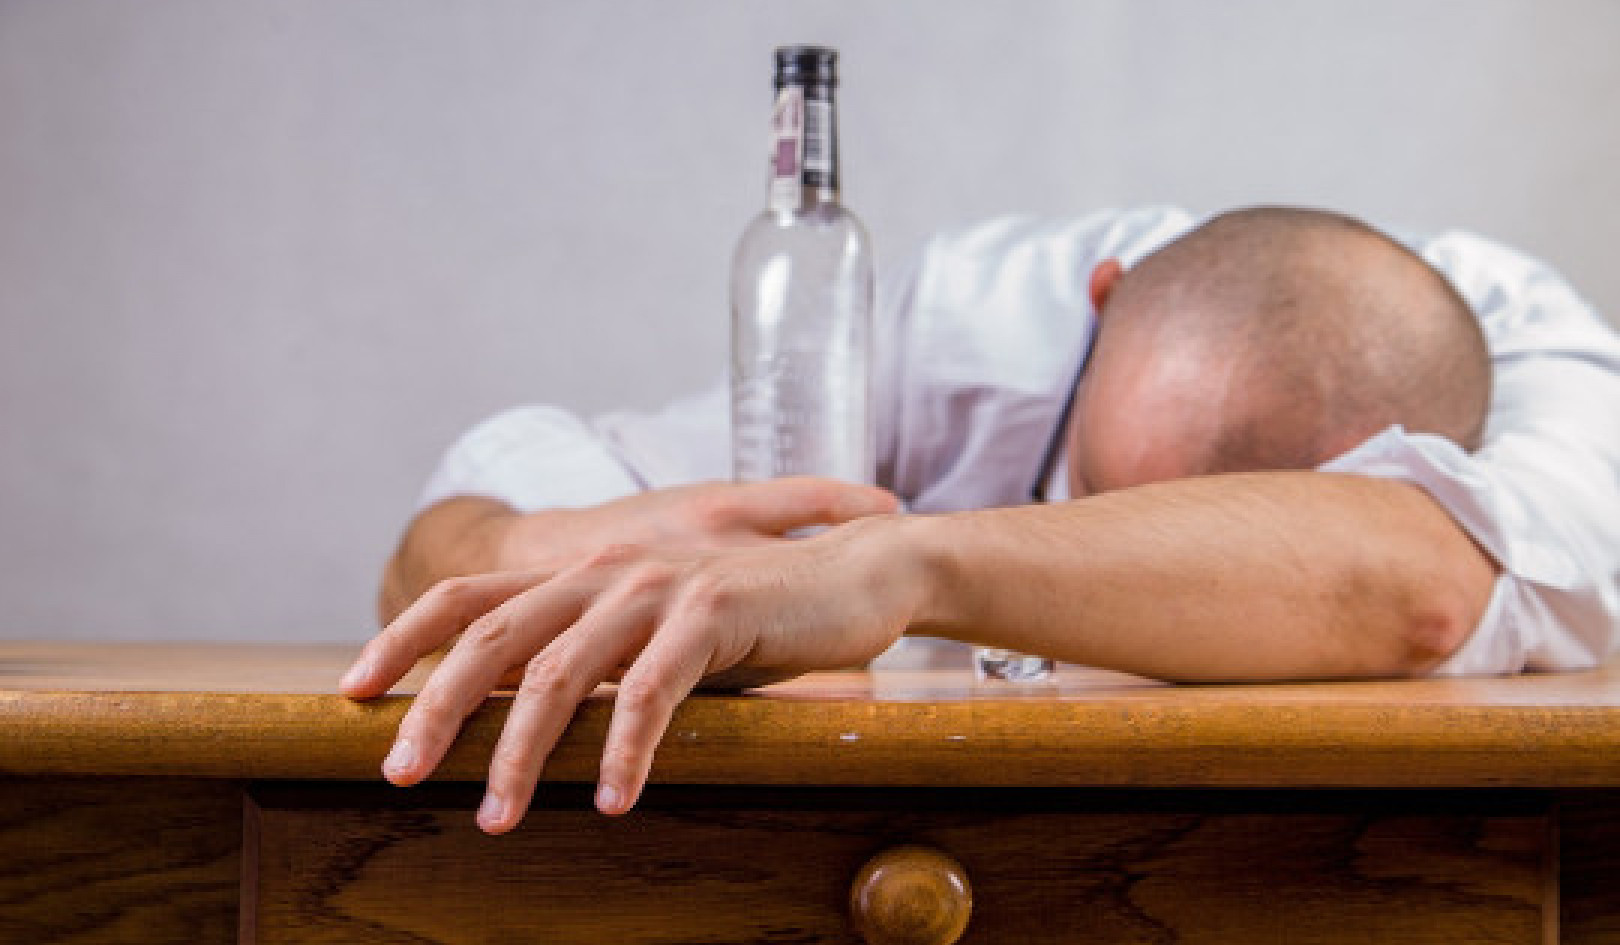 Πότε είναι πιο πιθανό οι άνθρωποι να πίνουν πολύ;